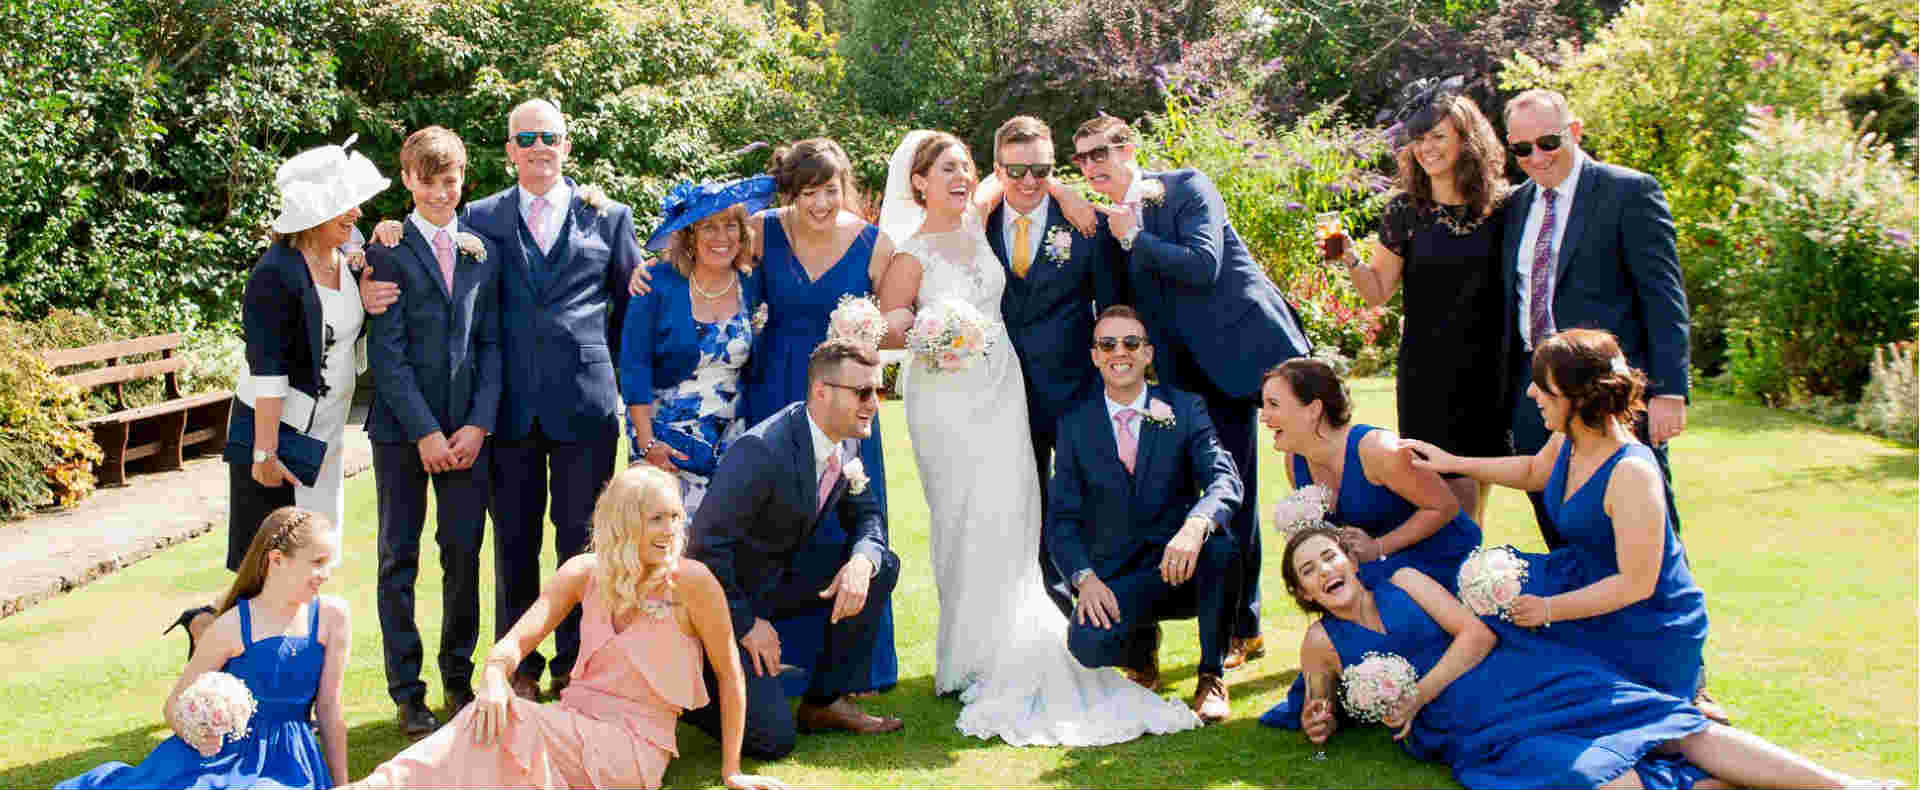 Real Weddings | Serina and Ian | Montagu Arms1